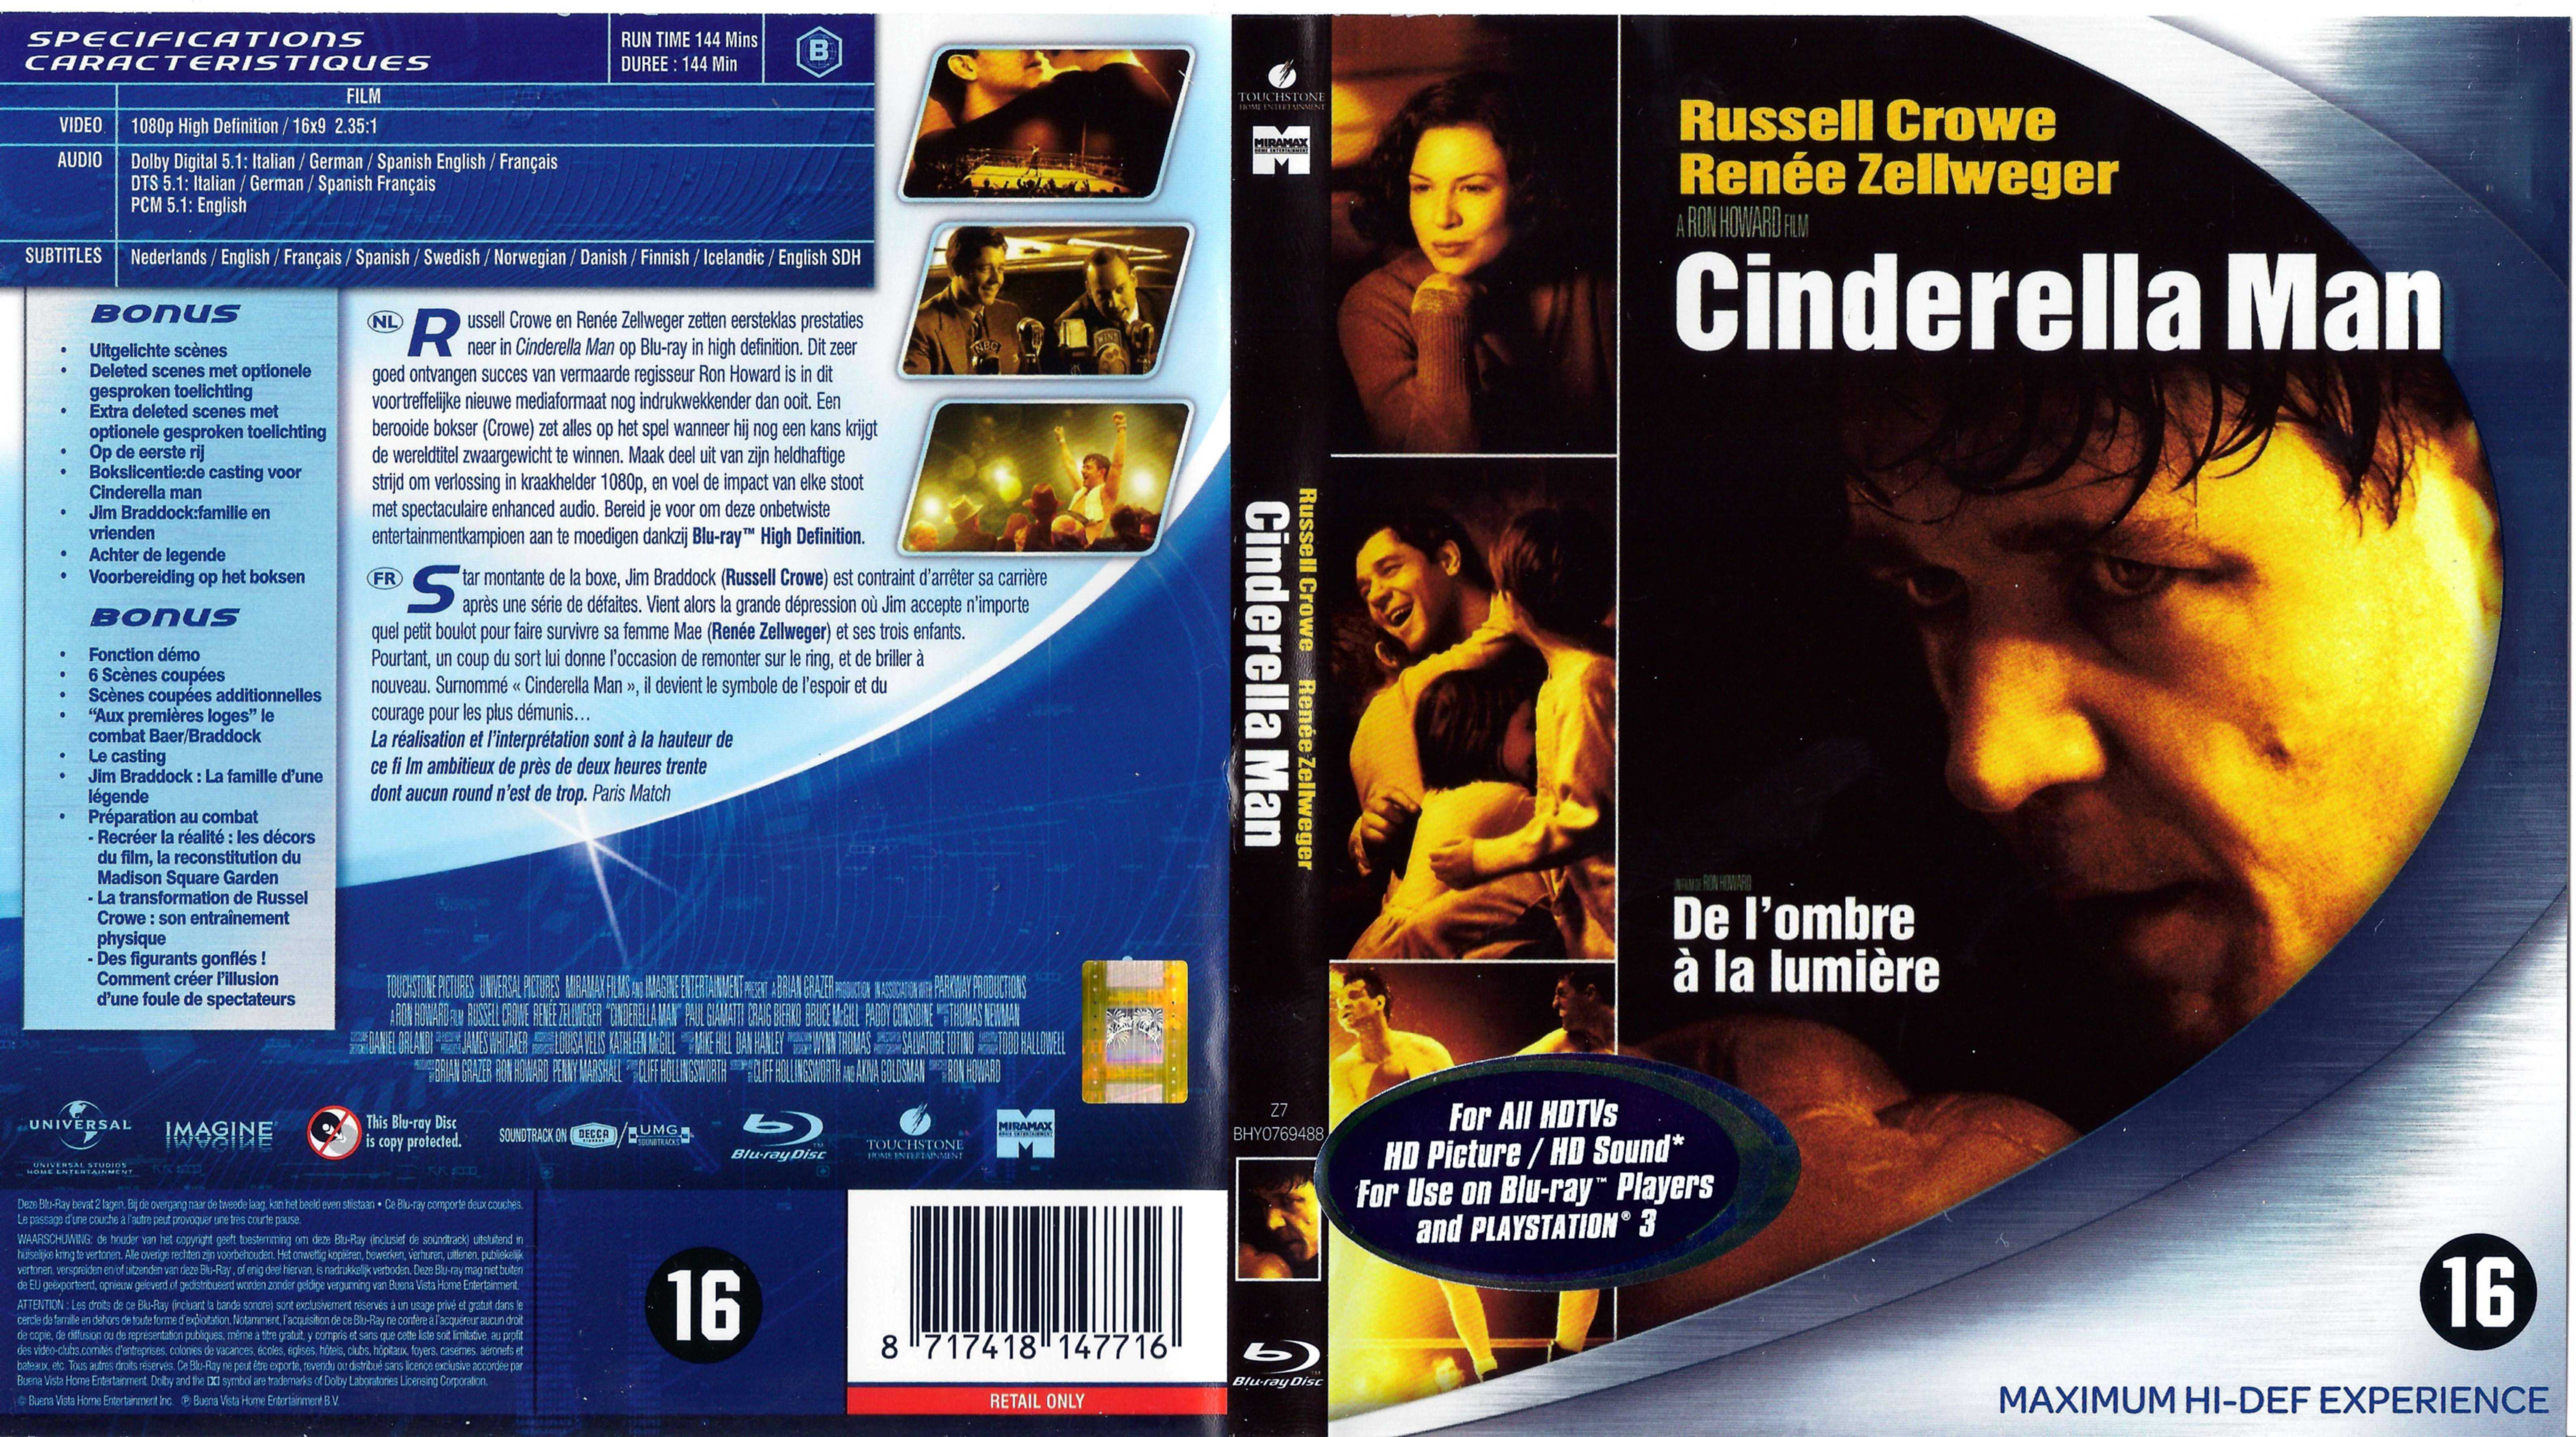 Jaquette DVD Cinderella man - De l